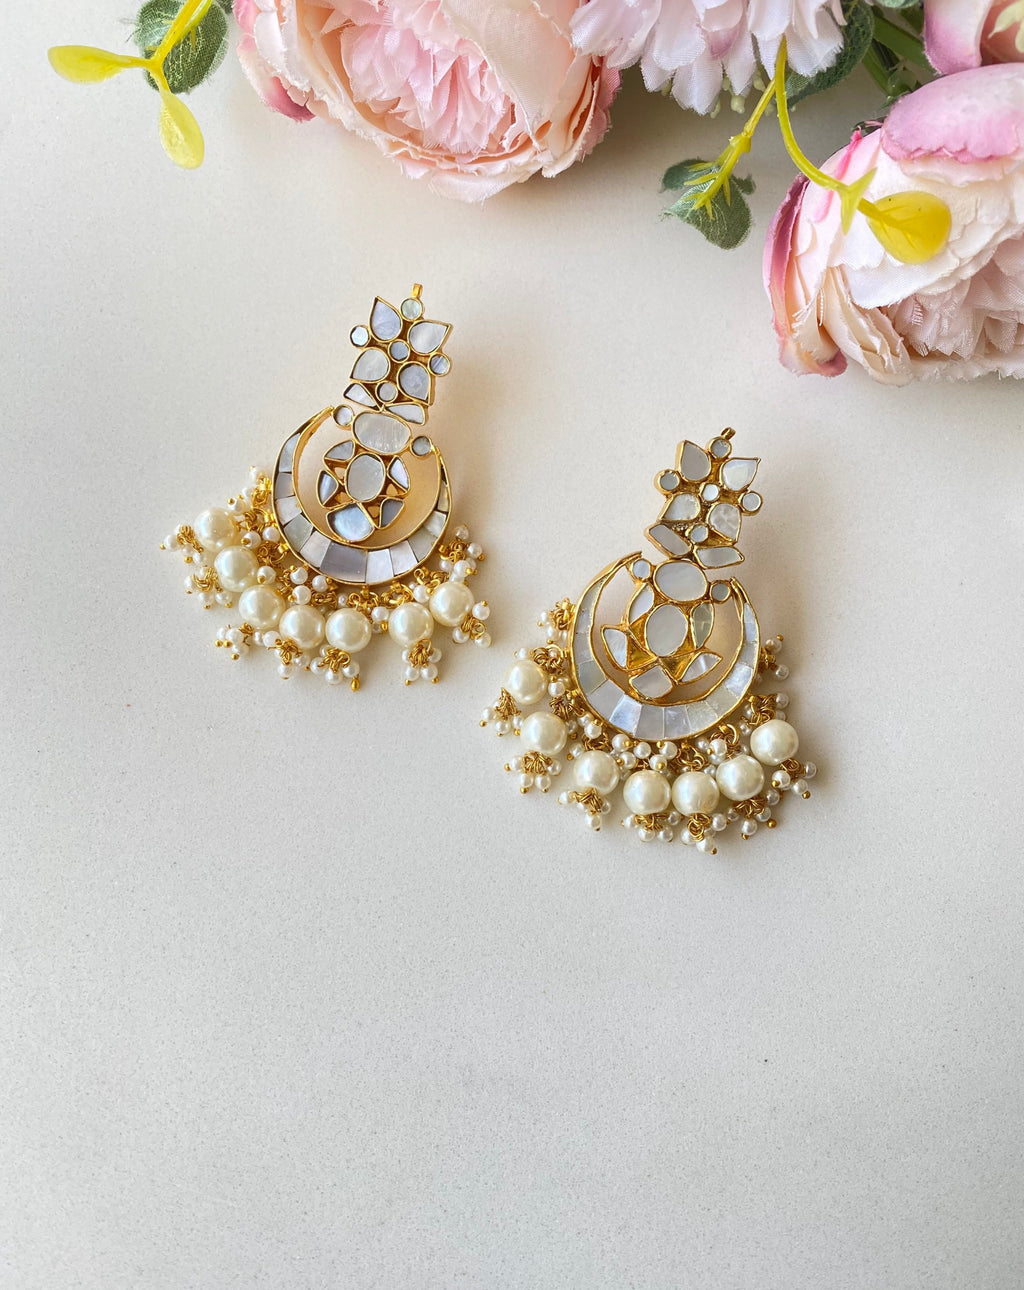 Mother of pearl earrings